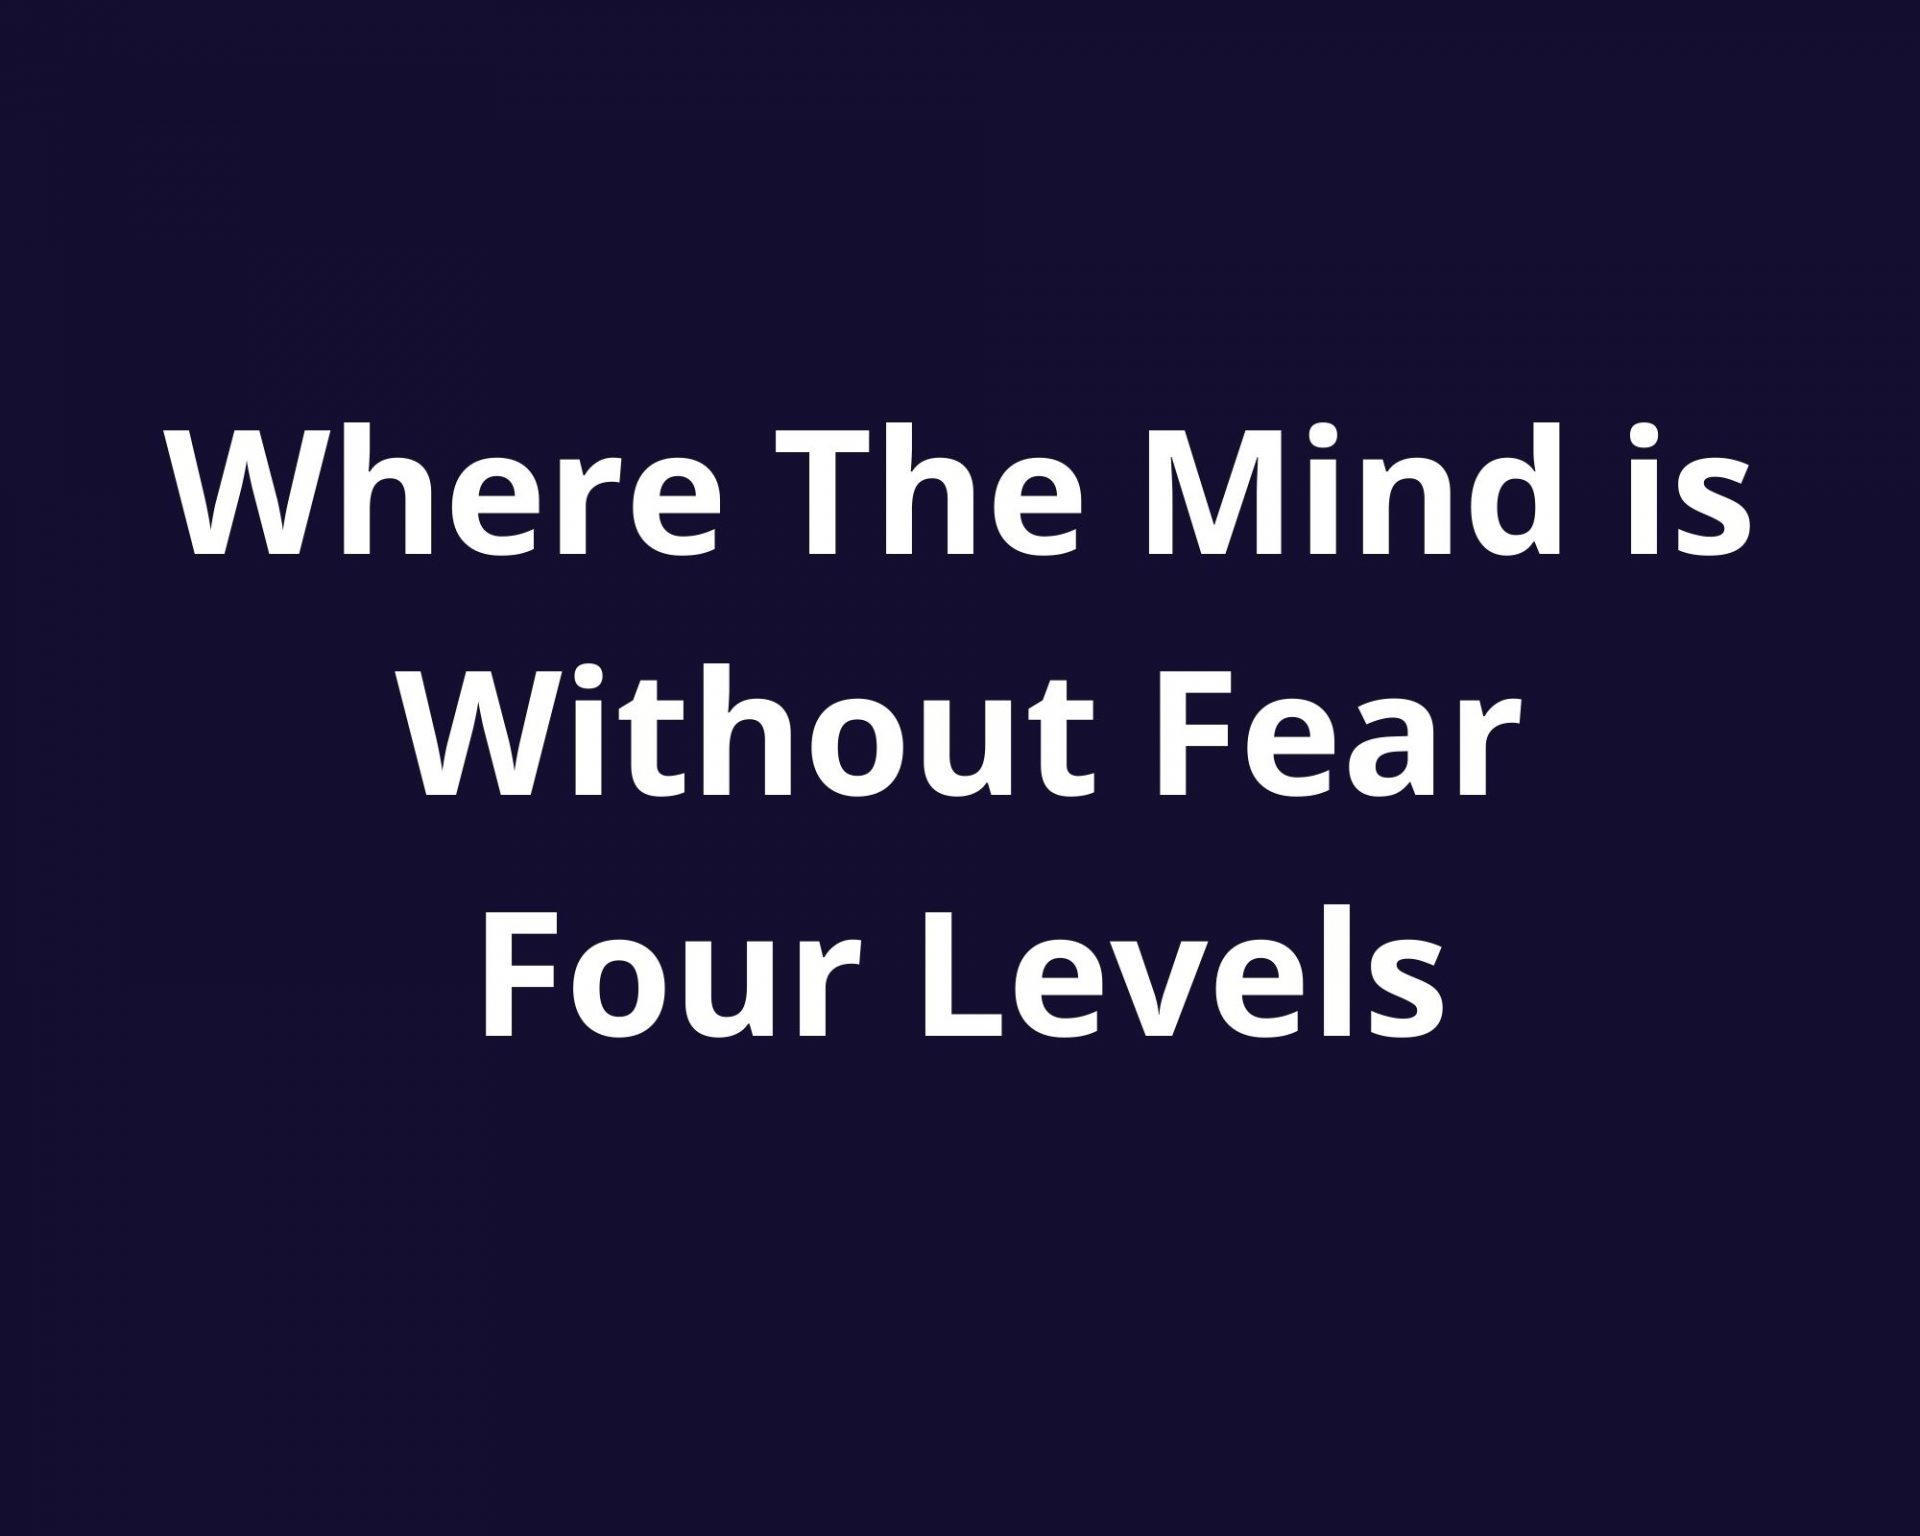 Cuatro niveles del poema “Donde la mente está sin miedo”